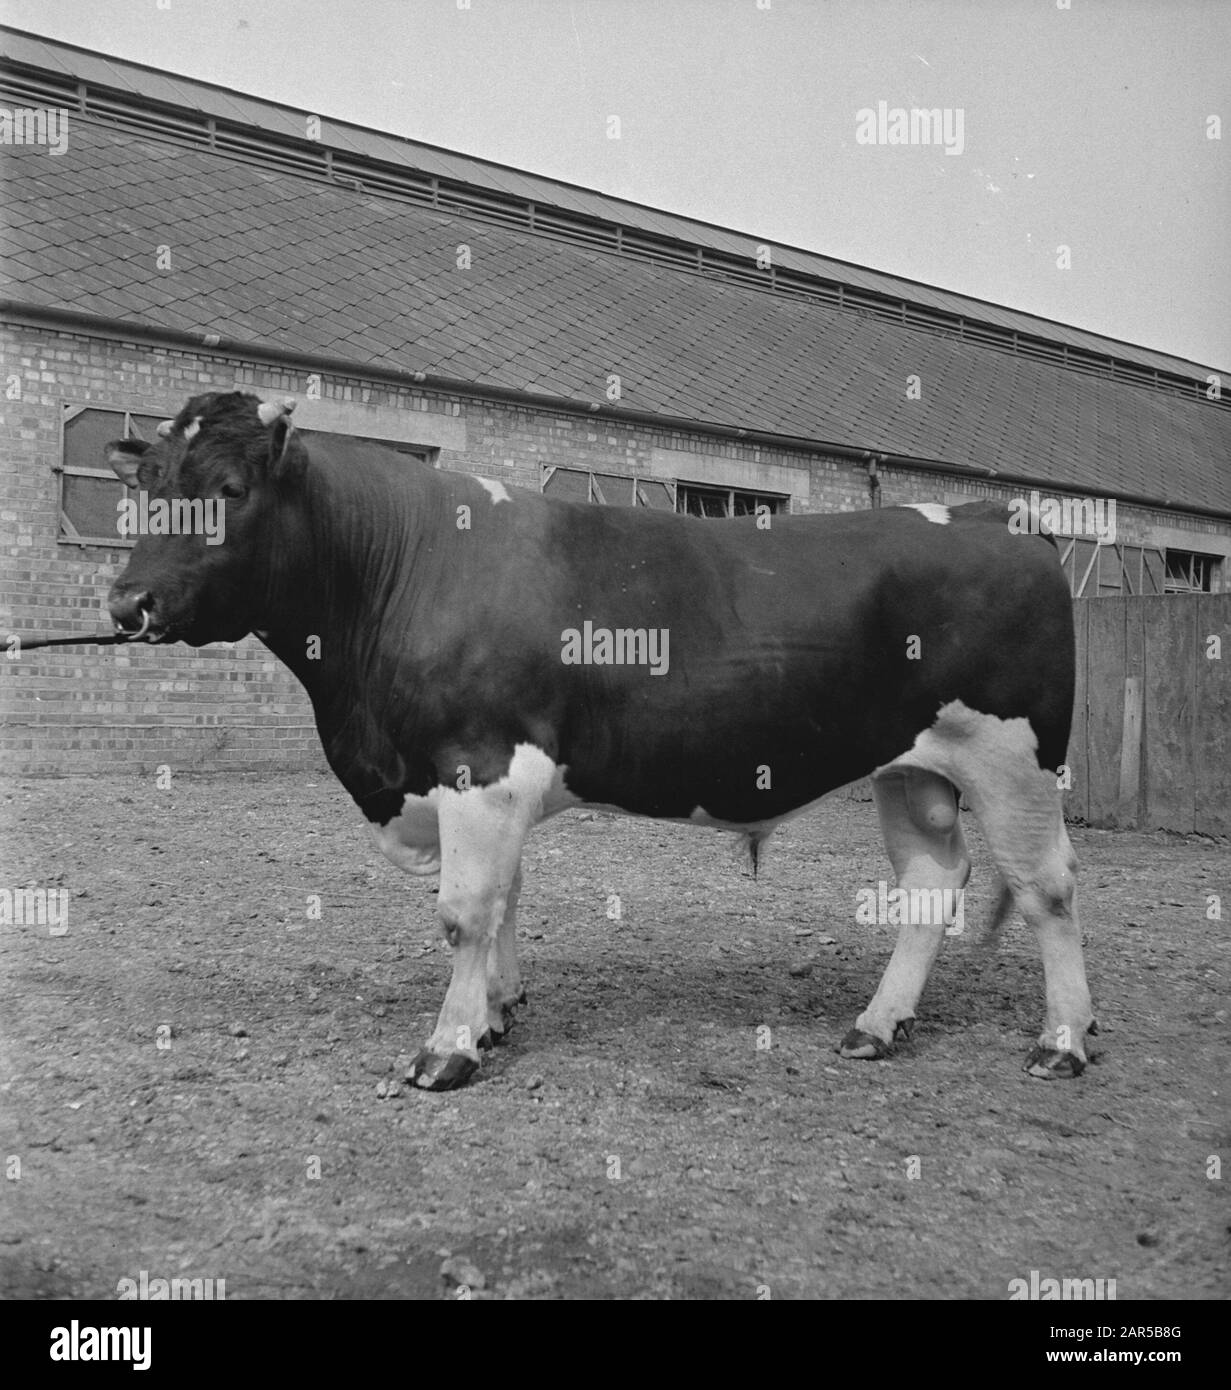 1938 gab es in Holland etwa 1,5 Millionen Milchkühe, die durchschnittlich 1000 Gallonen Milch pro P.a. Mit einem Fettgehalt von 3,56 produzierten. Viele Meisterkühe und Bullen wurden exportiert, um neue Herden in mehreren Ländern zu gründen. Die beiden ältesten in England ansässigen Herden sind die Terling- und die Lavenham-Herde, die mehr als 1500 Kopf an Lord Ralleighs Farmen in Essex zählen. Diese Herden - attestiert und tuberkulin getestet - haben viele Champions enthalten und erste Preise bei Milchmessen bereits im ganzen Land gewonnen. Terling Blomageousl P.I. ein 2-Jähriger, dessen Staudamm Terling Blomke aus Holland i importiert wurde Stockfoto